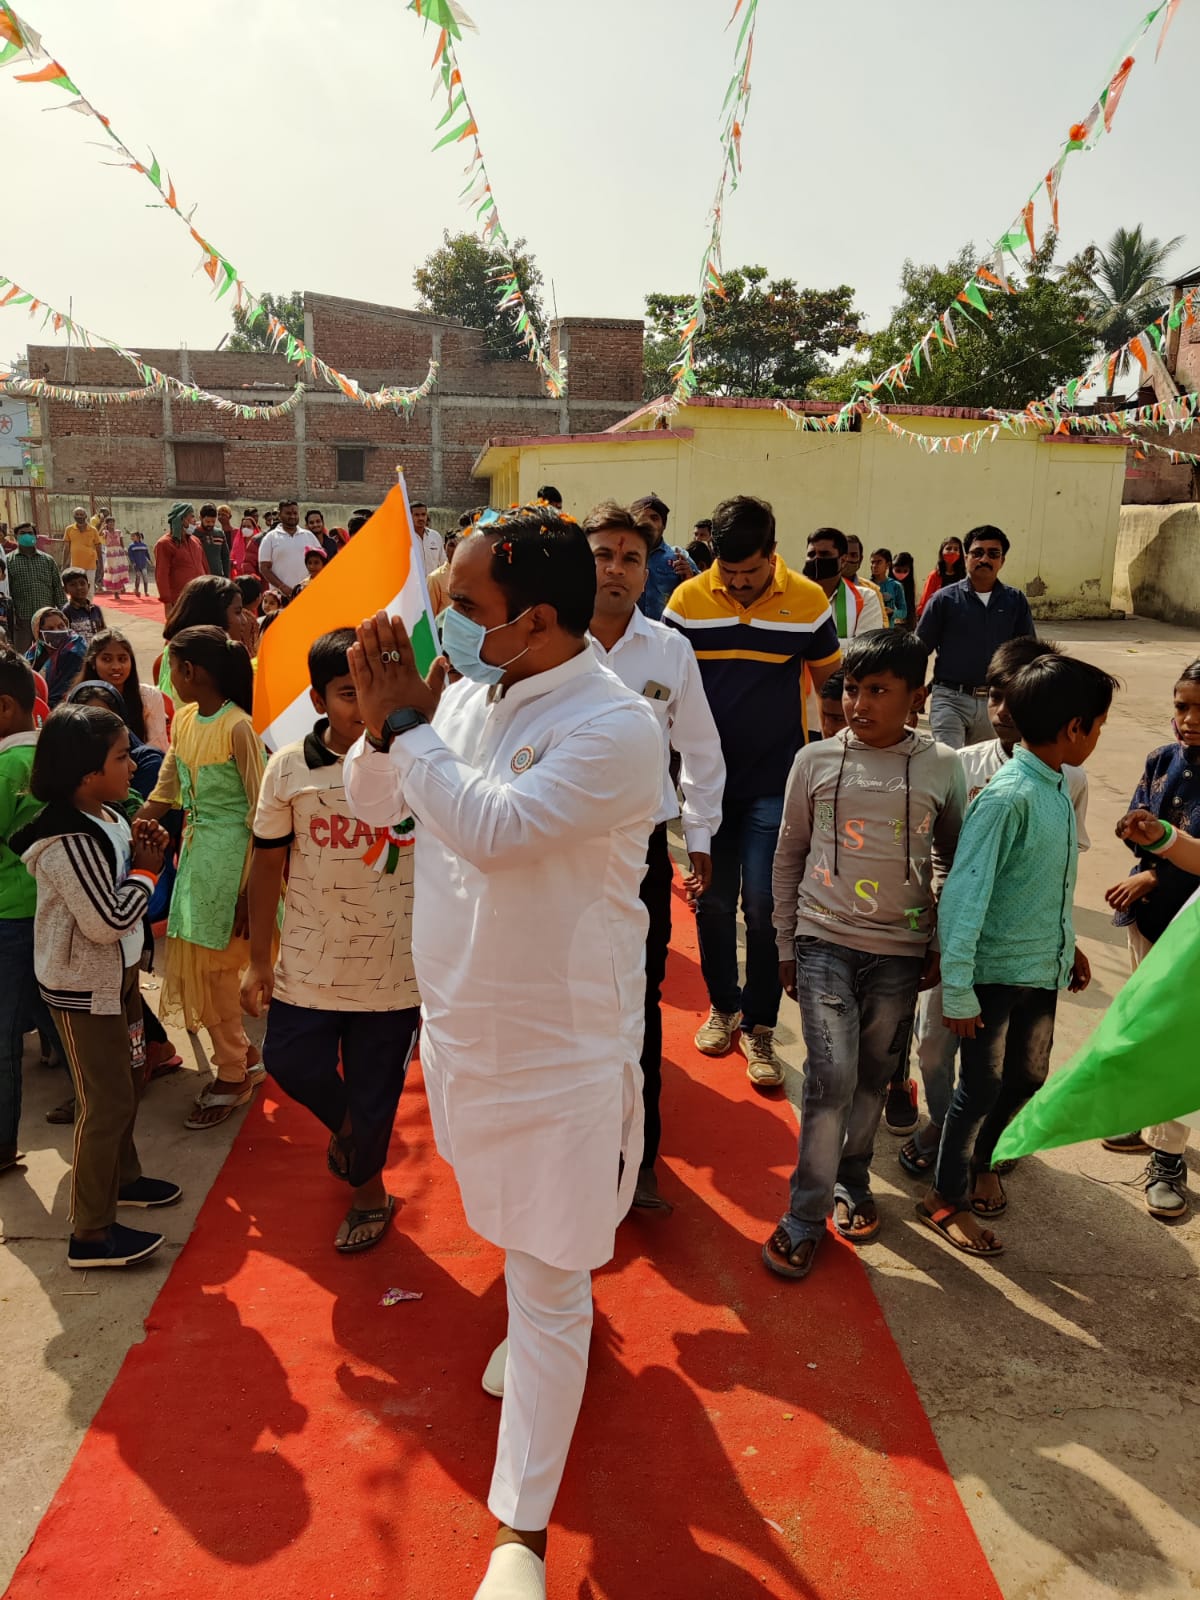 गणतंत्र दिवस पर देशभक्ति में डूबा गौतम नगर खुर्सीपार: BJP पार्षद विनोद सिंह ने किया ध्वजारोहण…महापुरुष बनकर बच्चों ने दी प्रस्तुति, जीत लिया सबका दिल